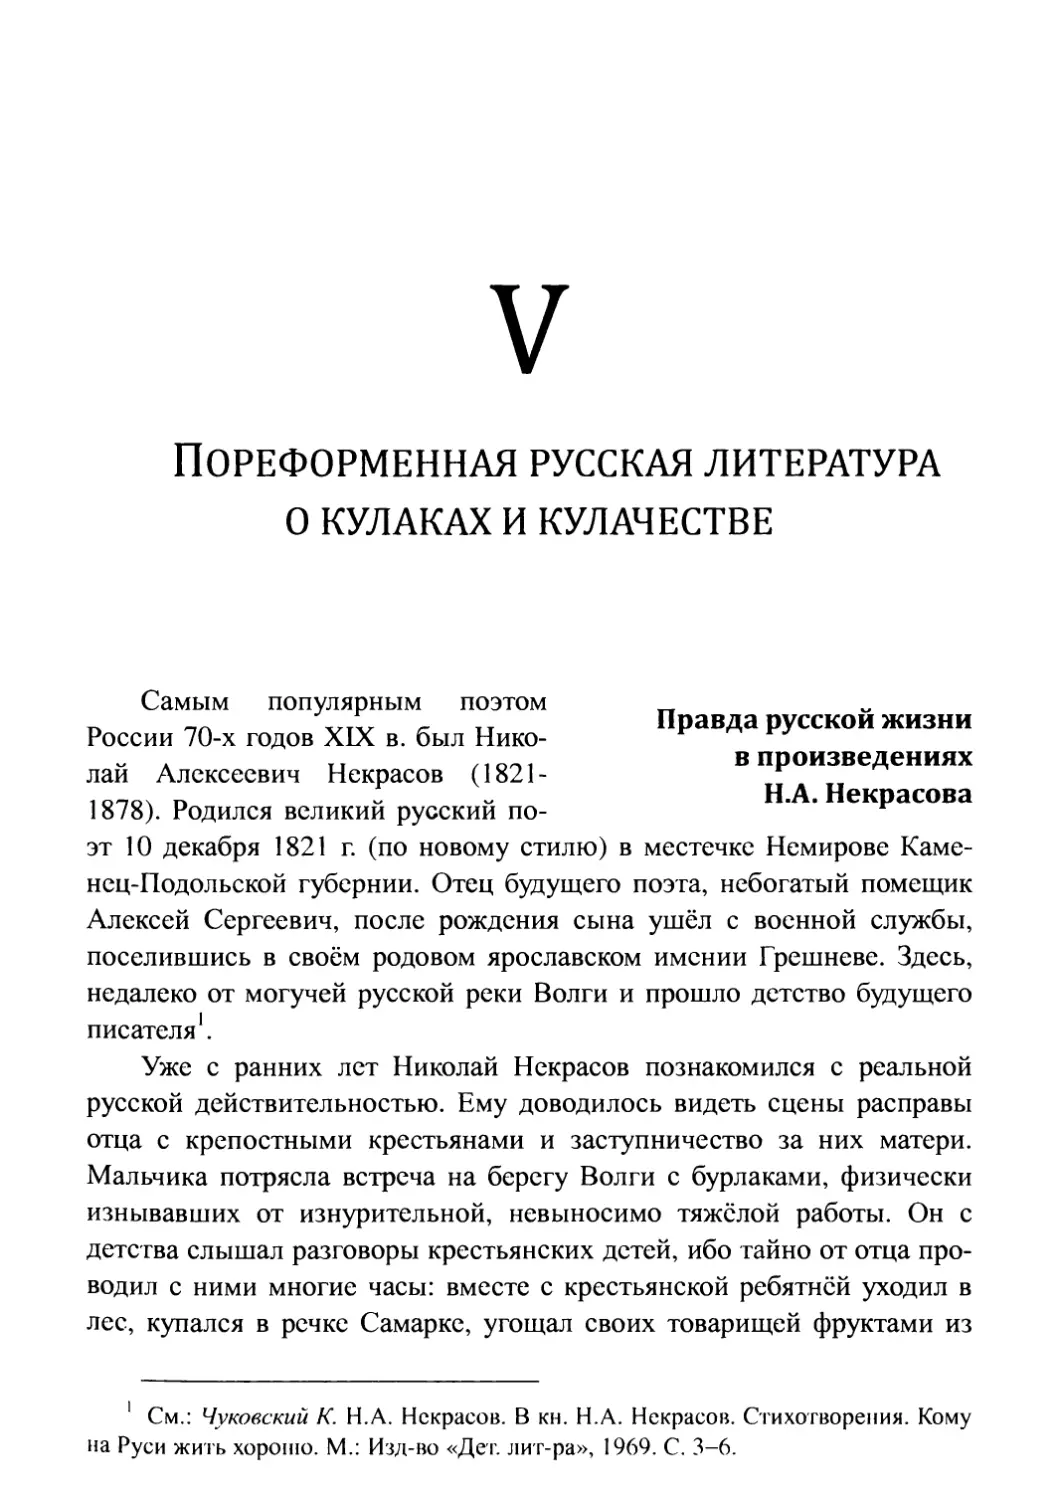 V. Пореформенная русская литература о кулаках и кулачестве